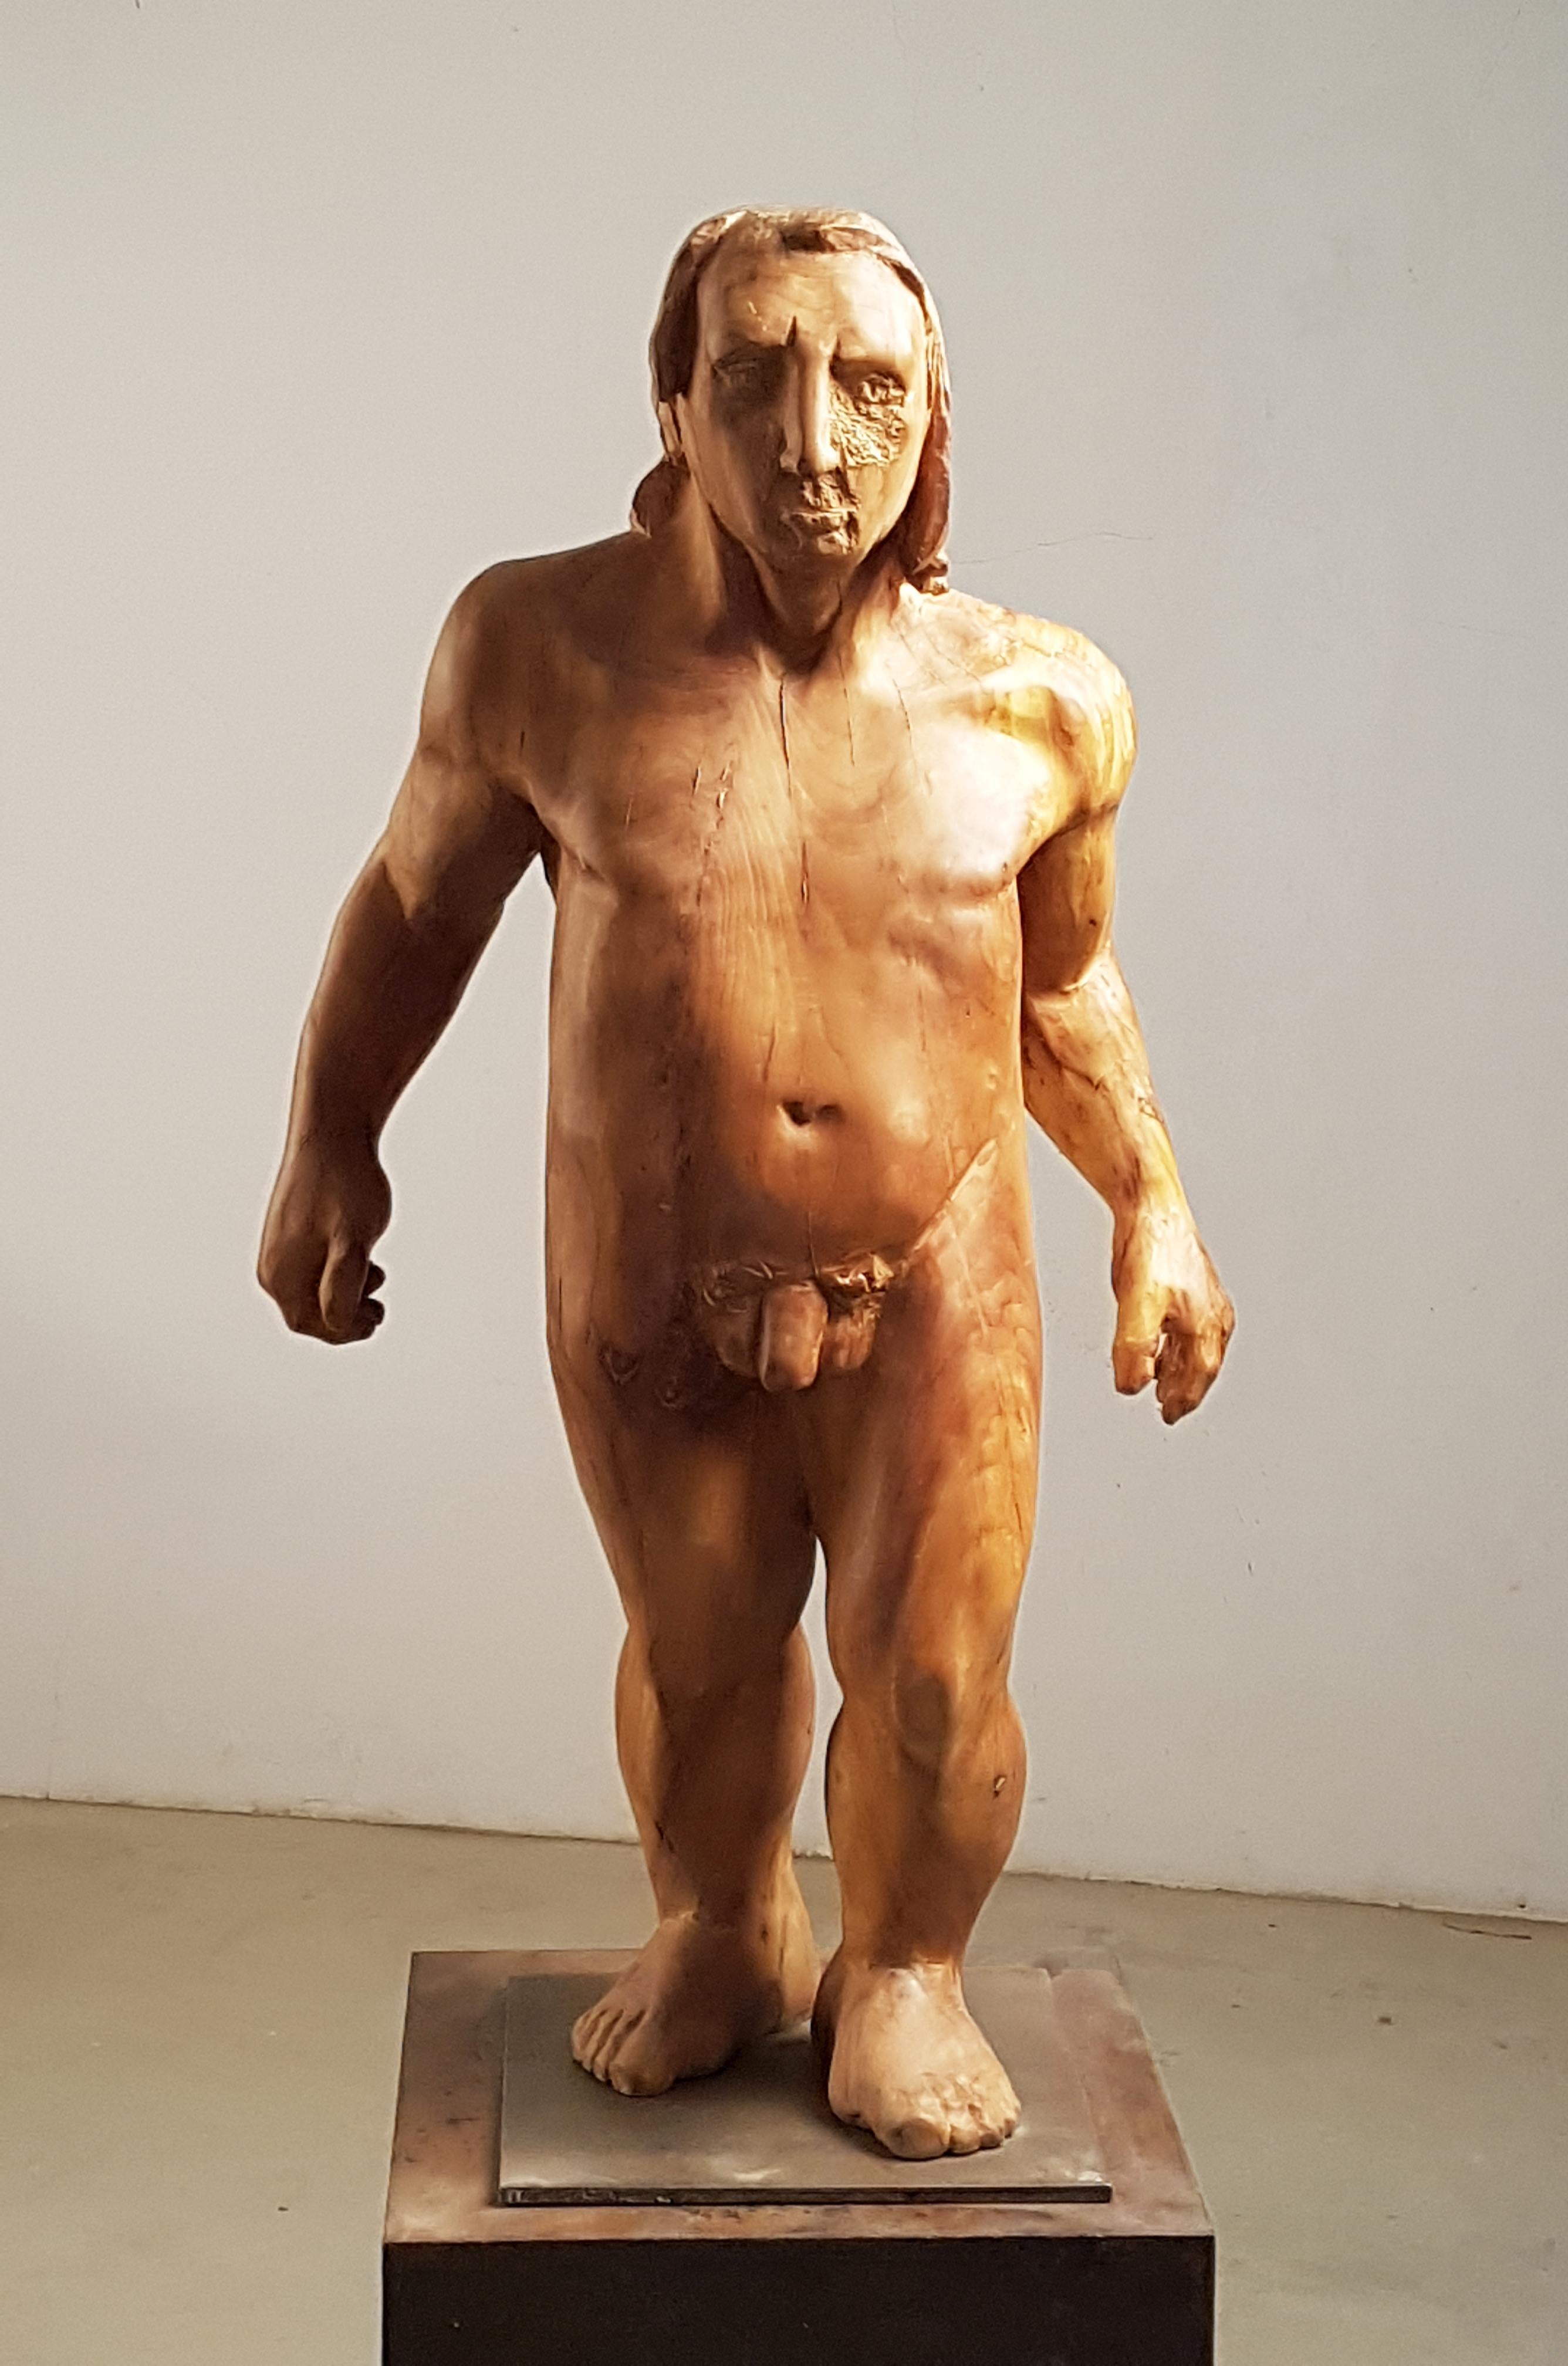 Amancio   Man  Perseo  wood  original  sculpture - Sculpture by Amancio González Andrés